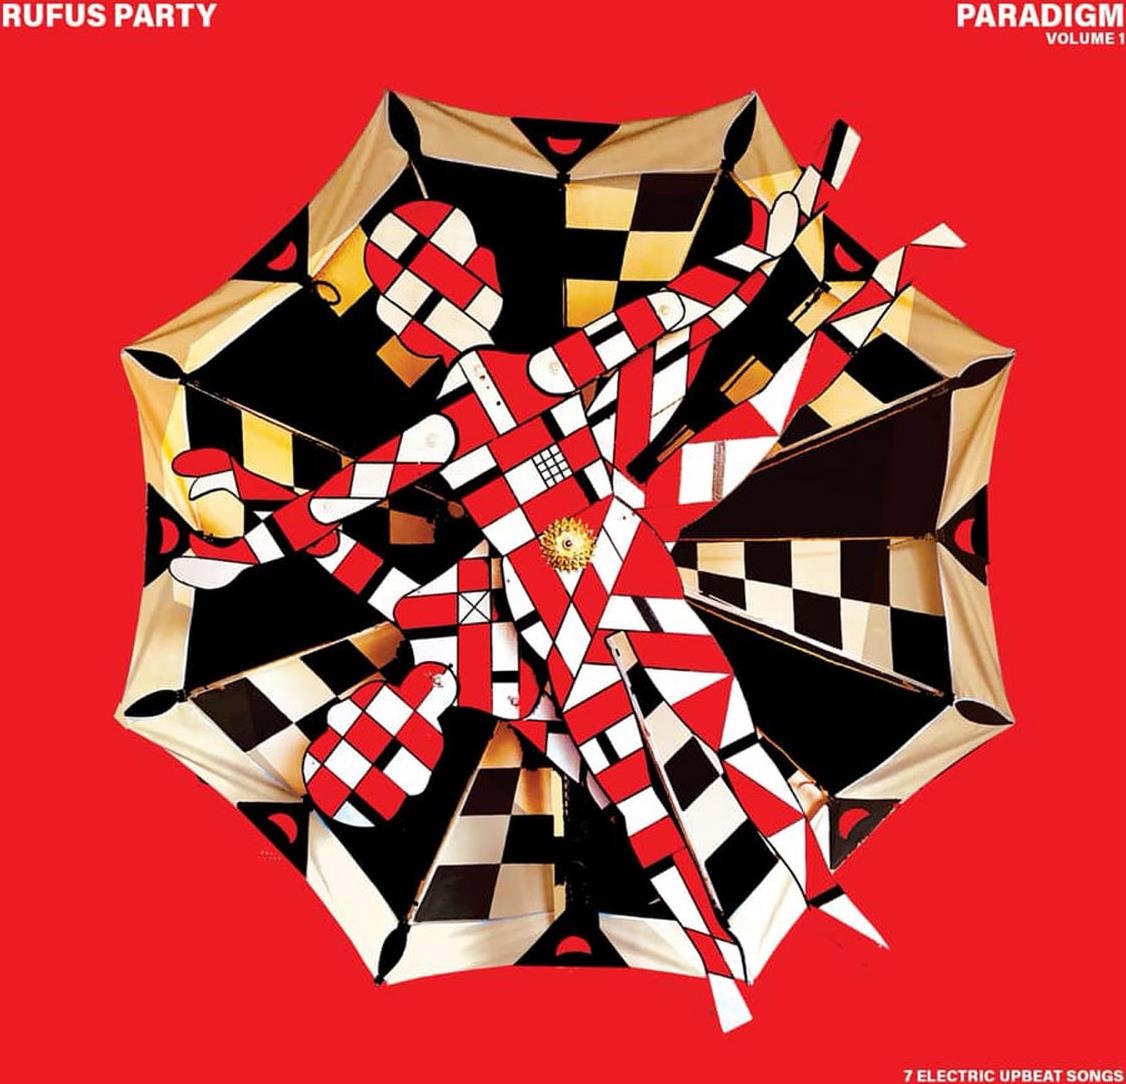 Vinile Rufus Party - Paradigm Vol. 1 -Lp+Cd NUOVO SIGILLATO SUBITO DISPONIBILE